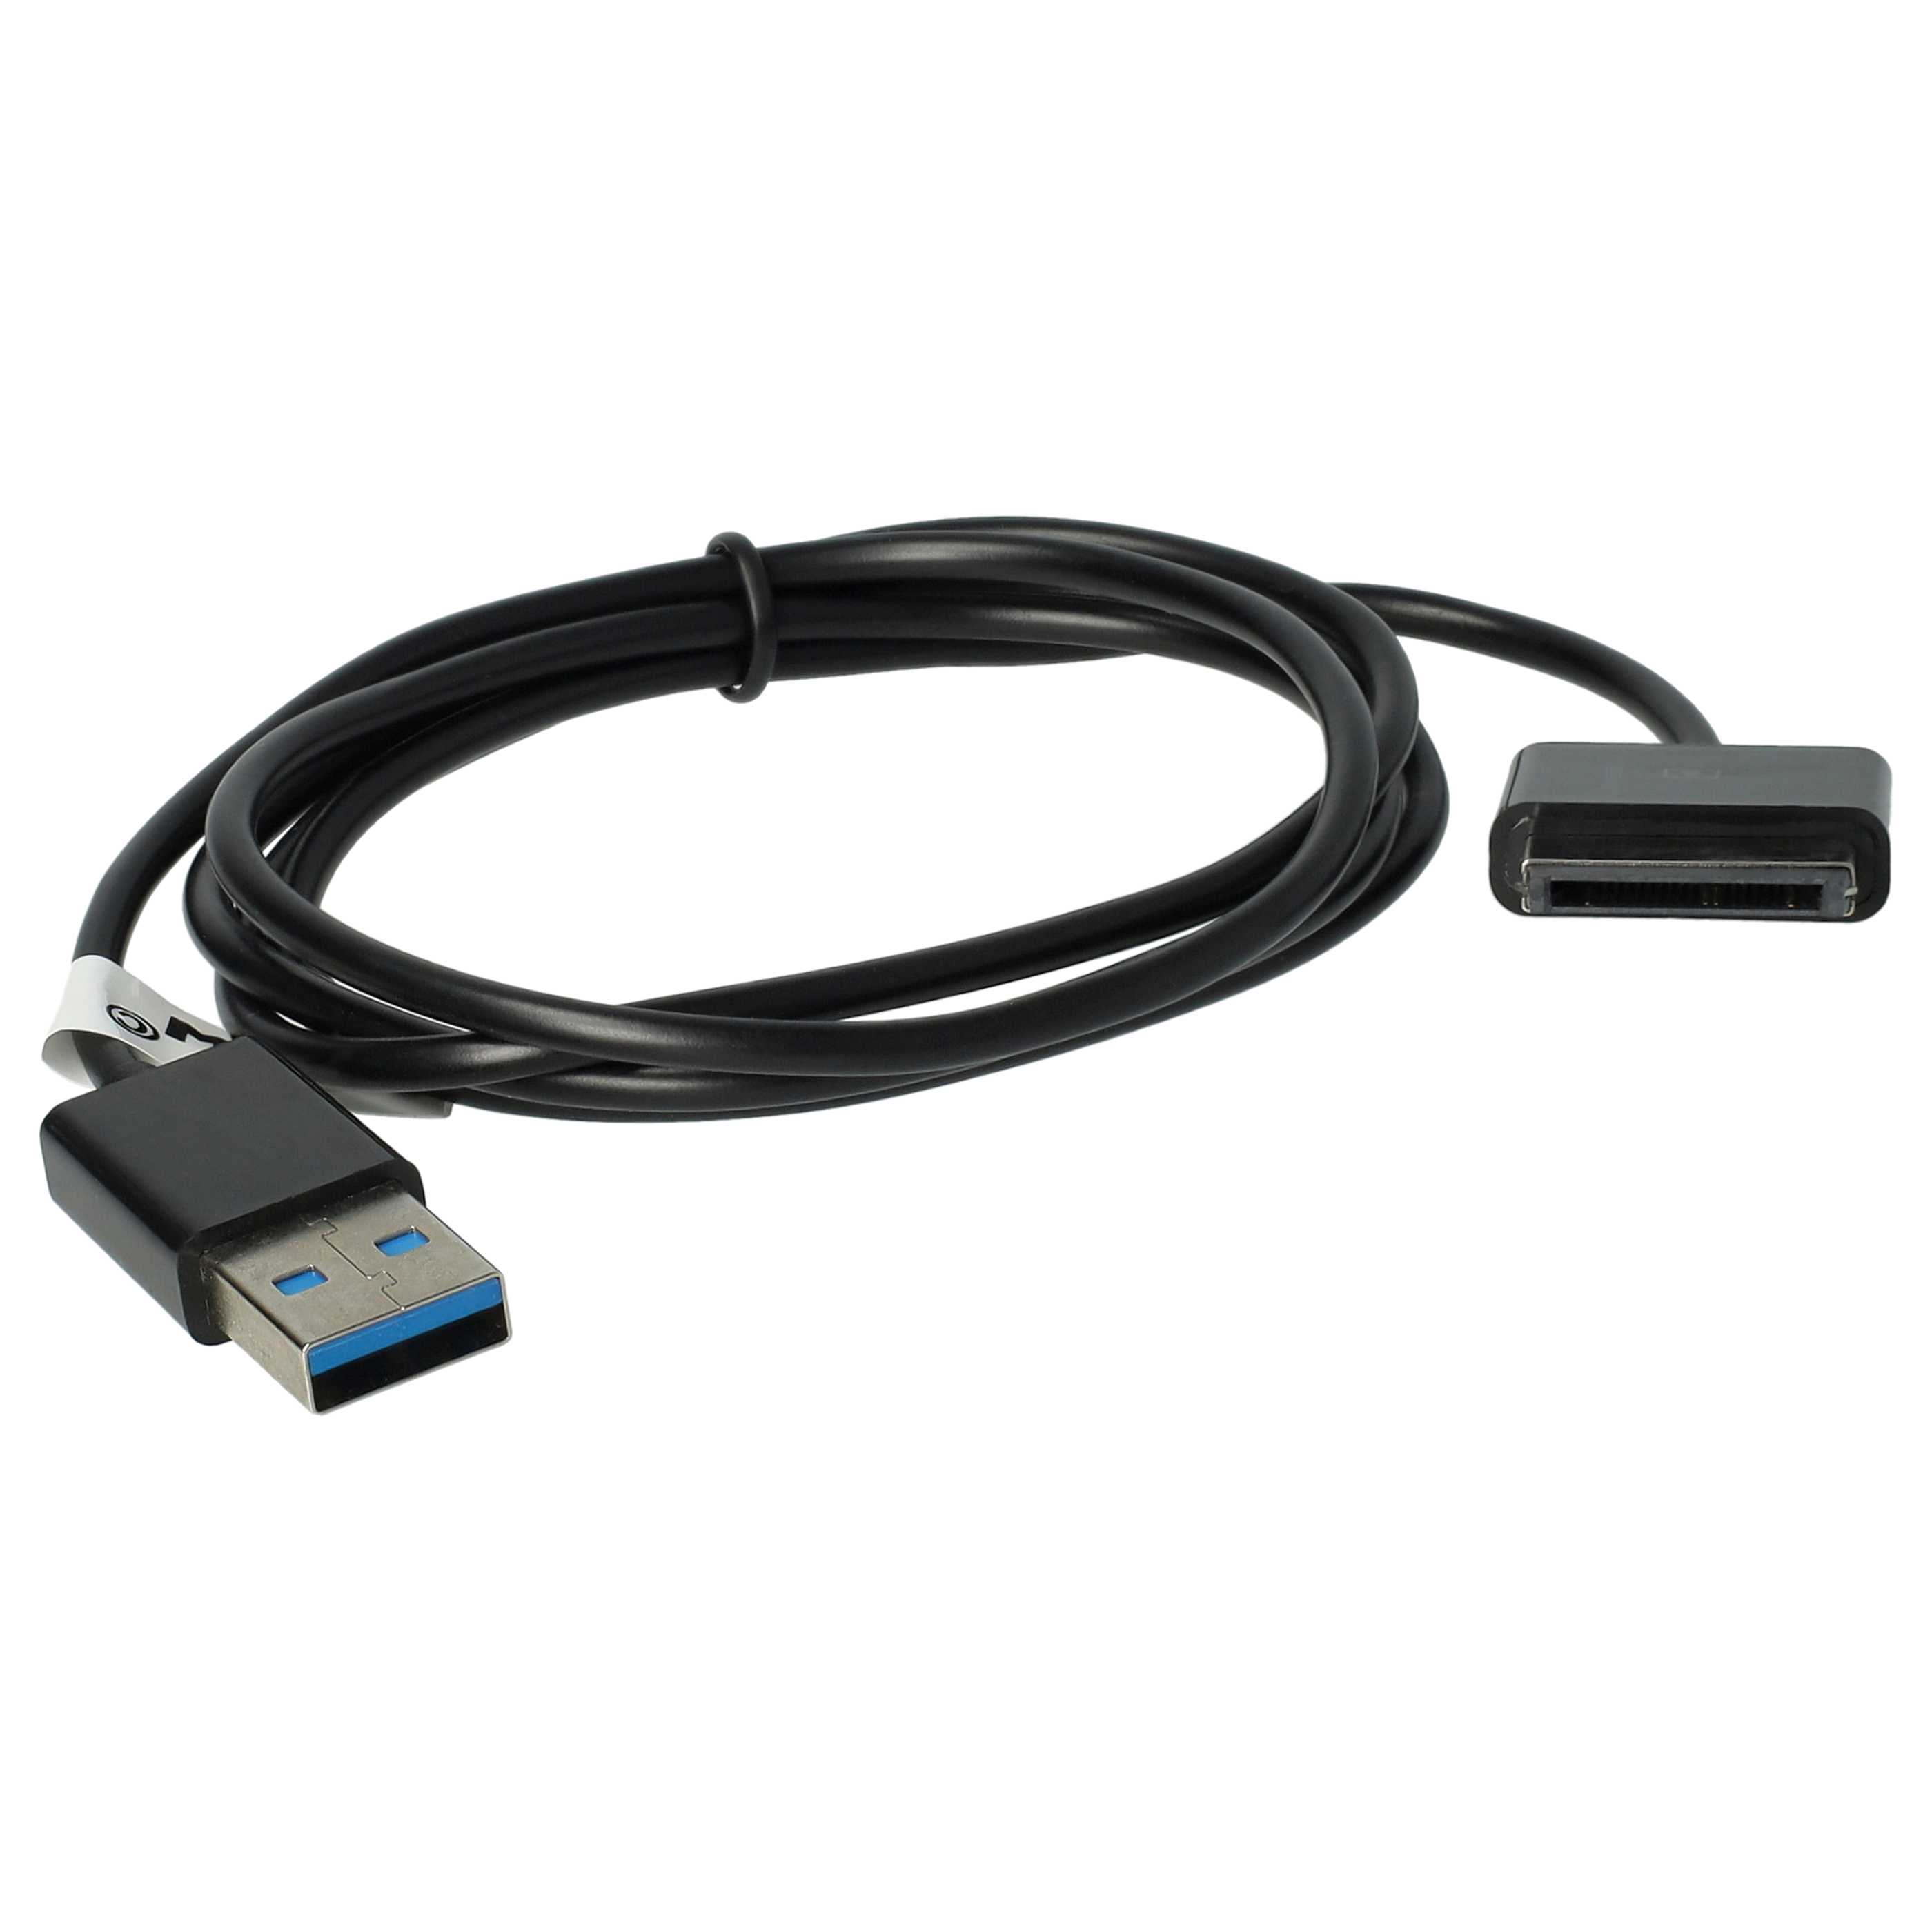 Cable de datos USB para tablet Asus Eee Pad Transformer SL101 - cable de carga 2en1, 100cm